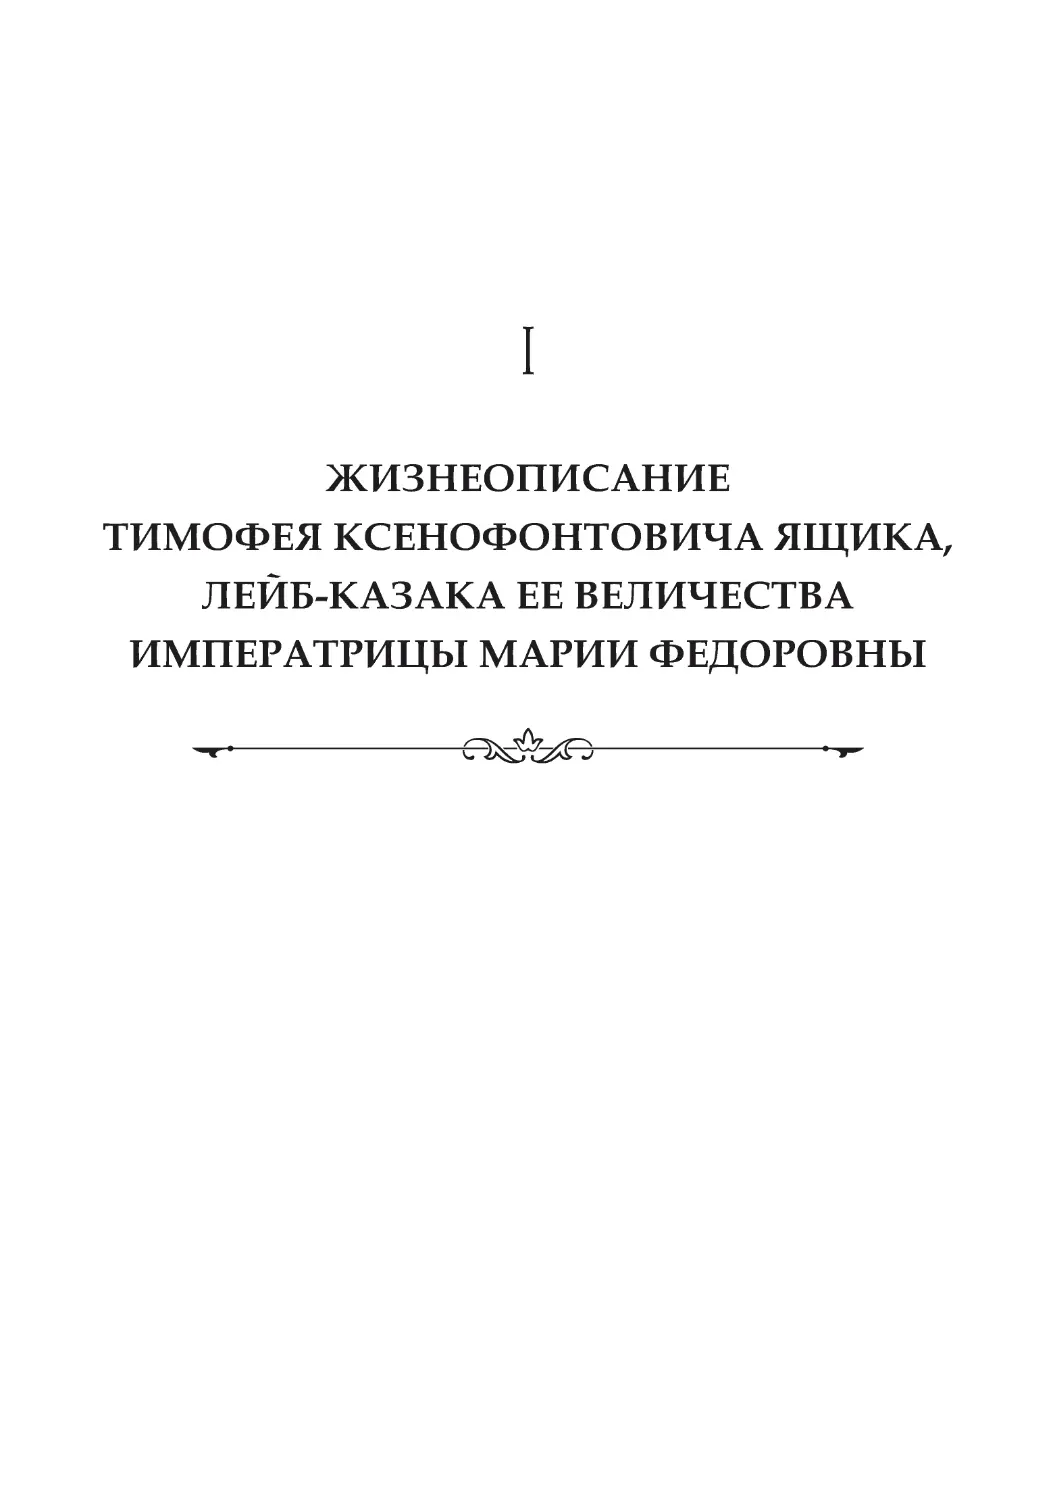 Жизнеописание Тимофея Ксенофонтовича Ящика